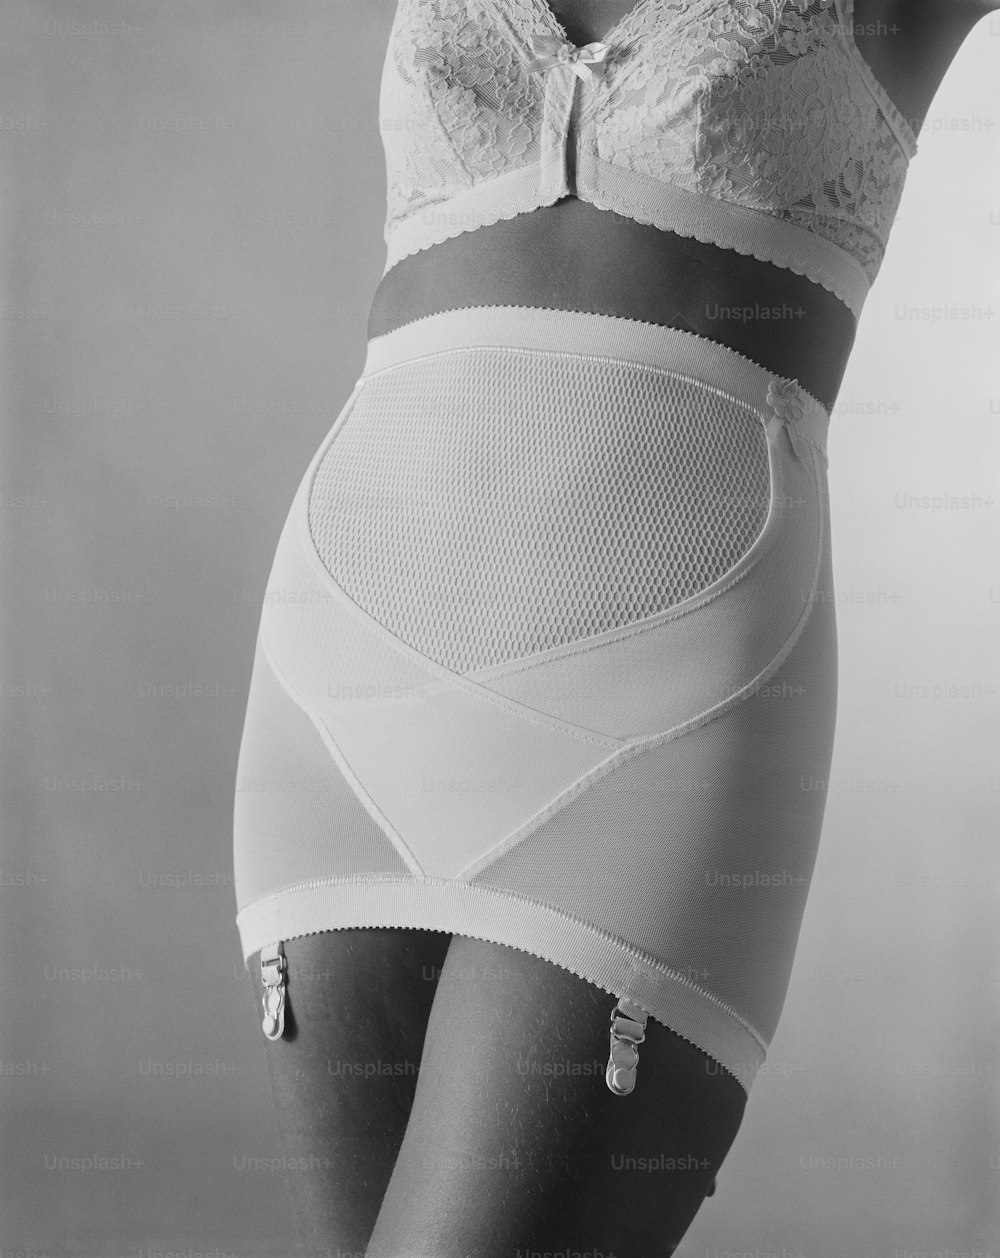 Una mujer con sujetador y bragas en una foto en blanco y negro